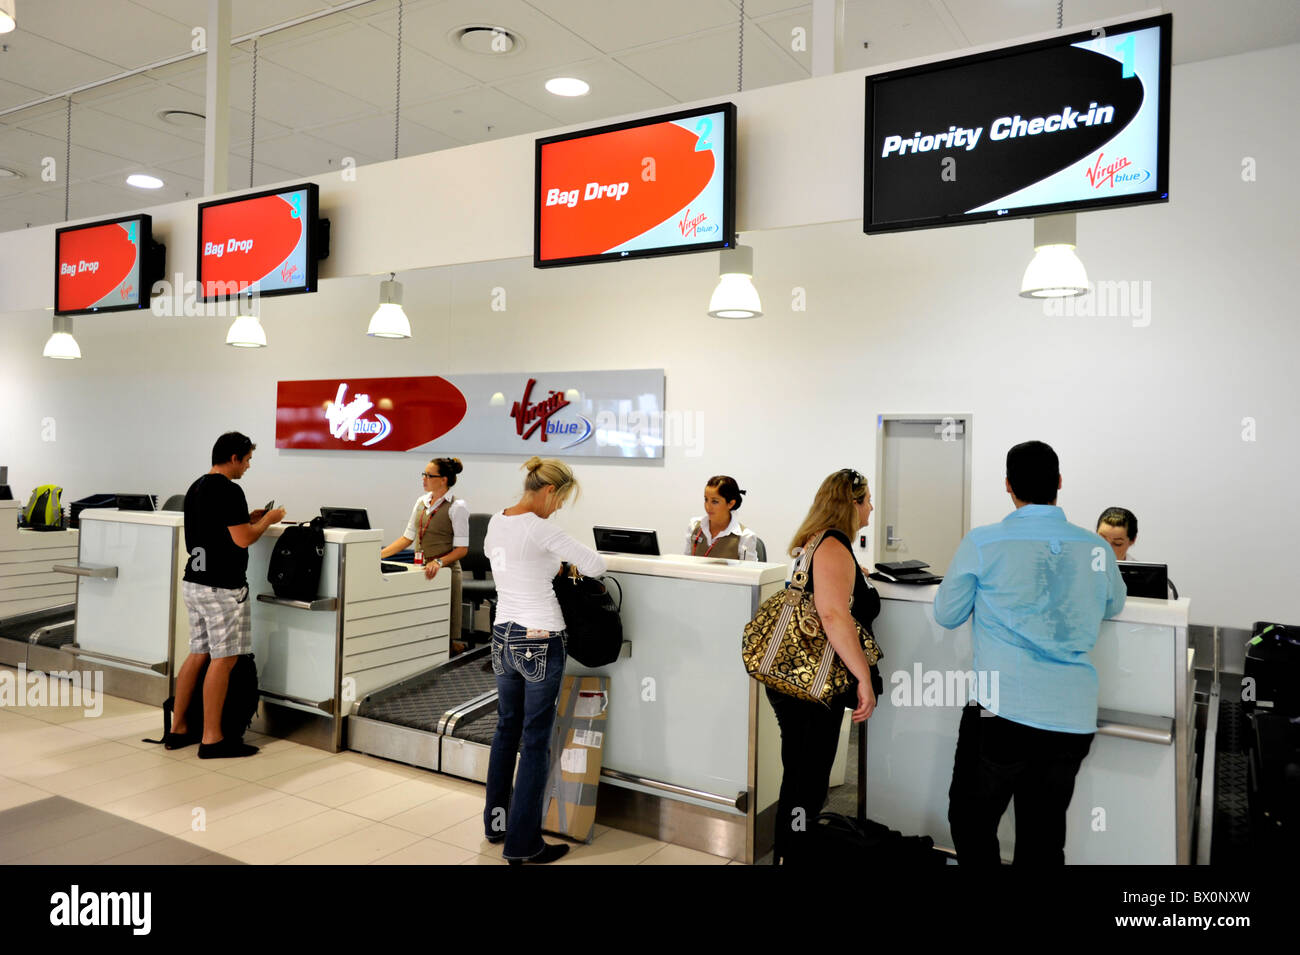 Priority Check-in presso la Vergine contatore all'Aeroporto di Gold Coast Australia Foto Stock